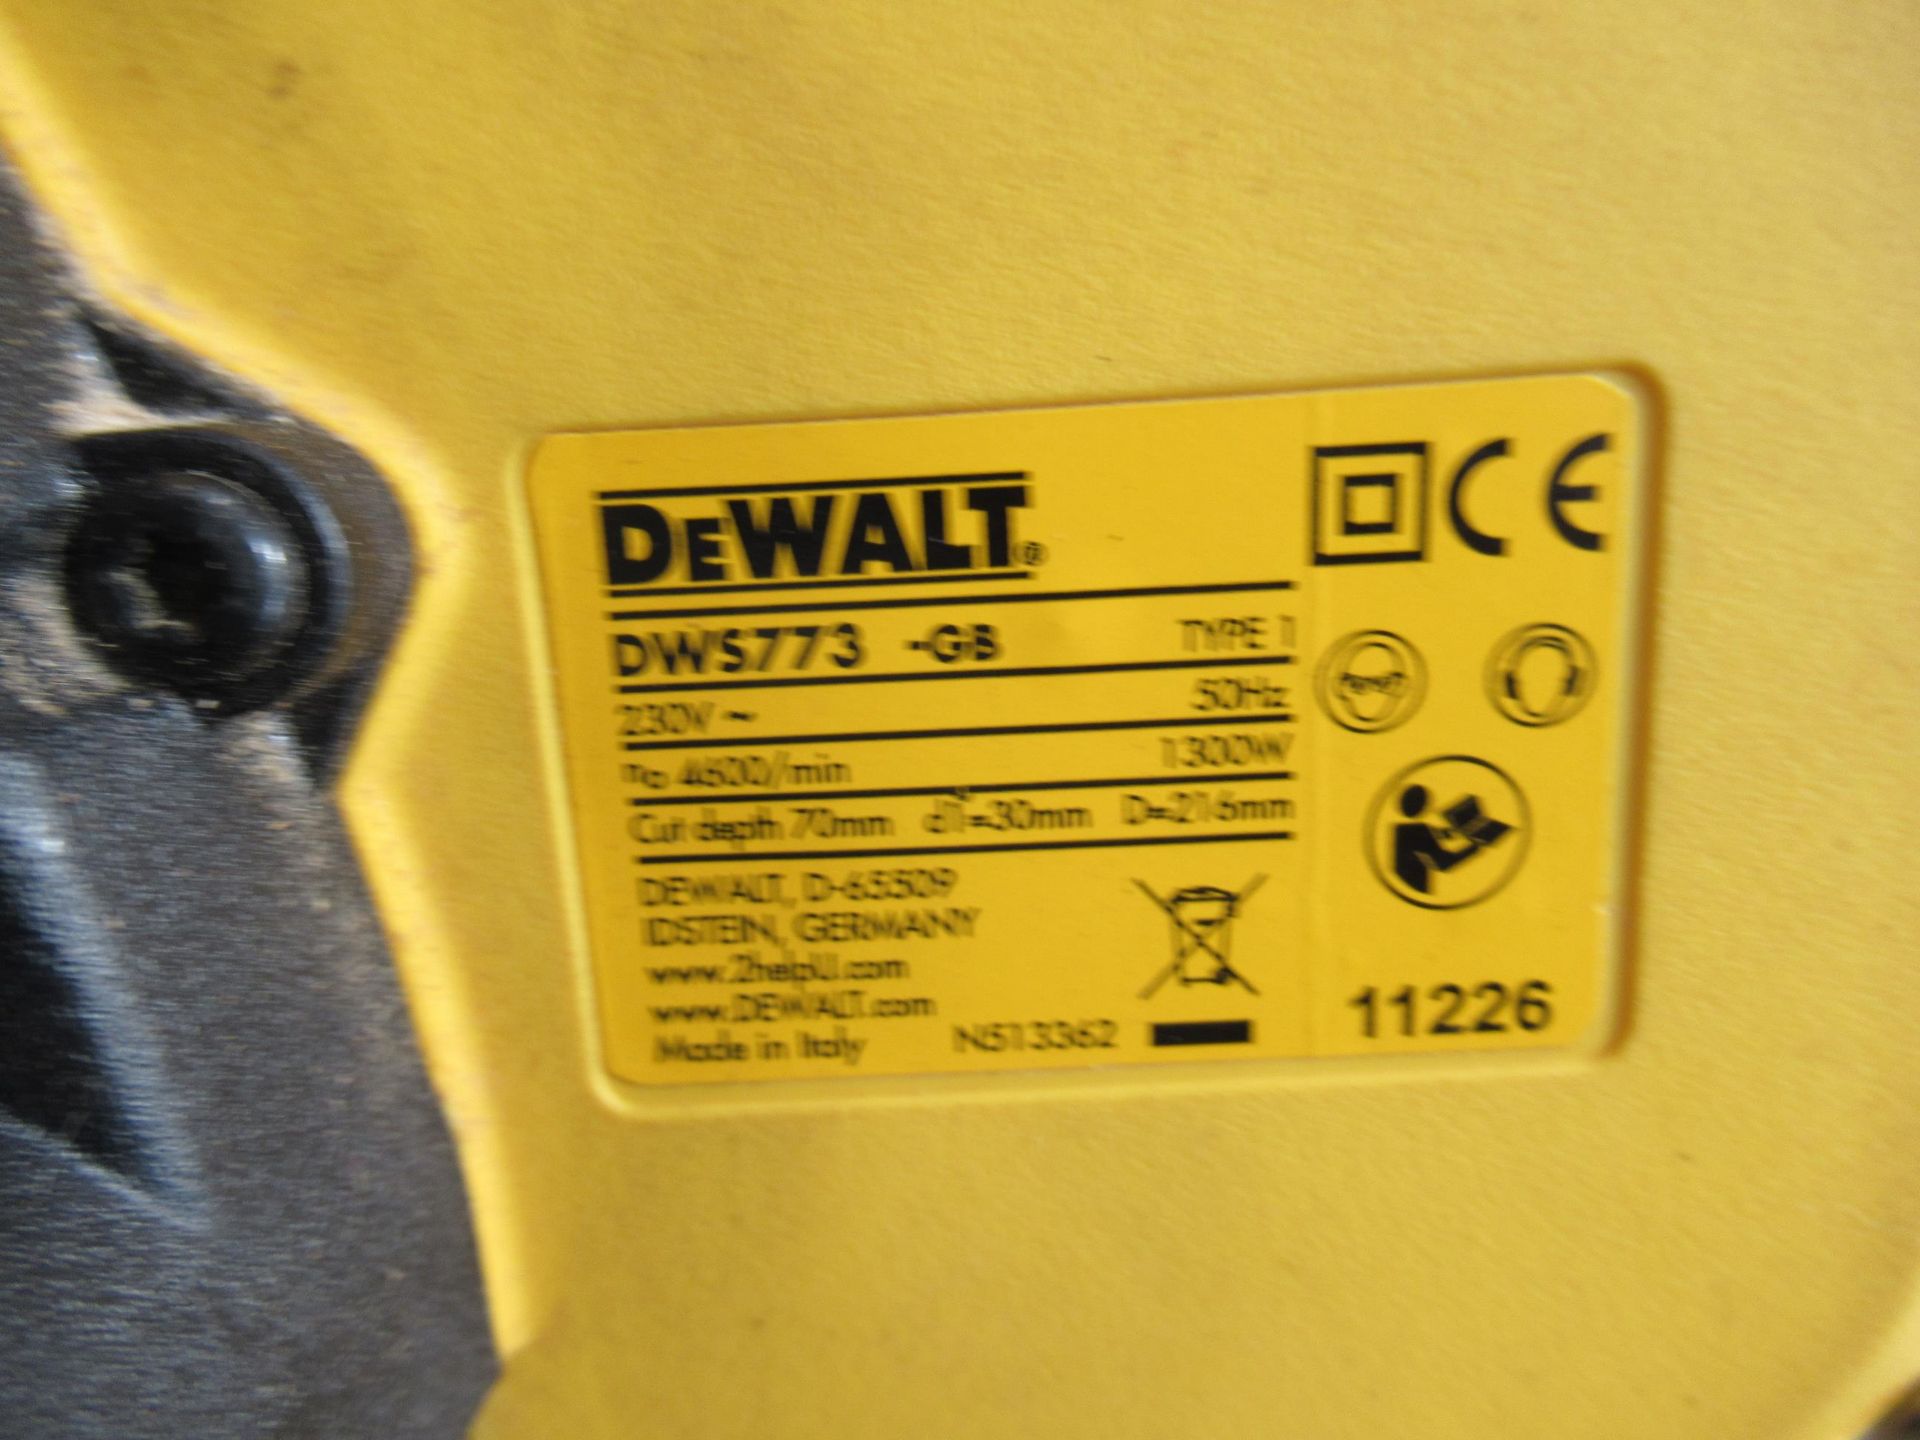 DeWalt DWS773 Mitre Saw 240 (Spares or Repair) - Image 2 of 3